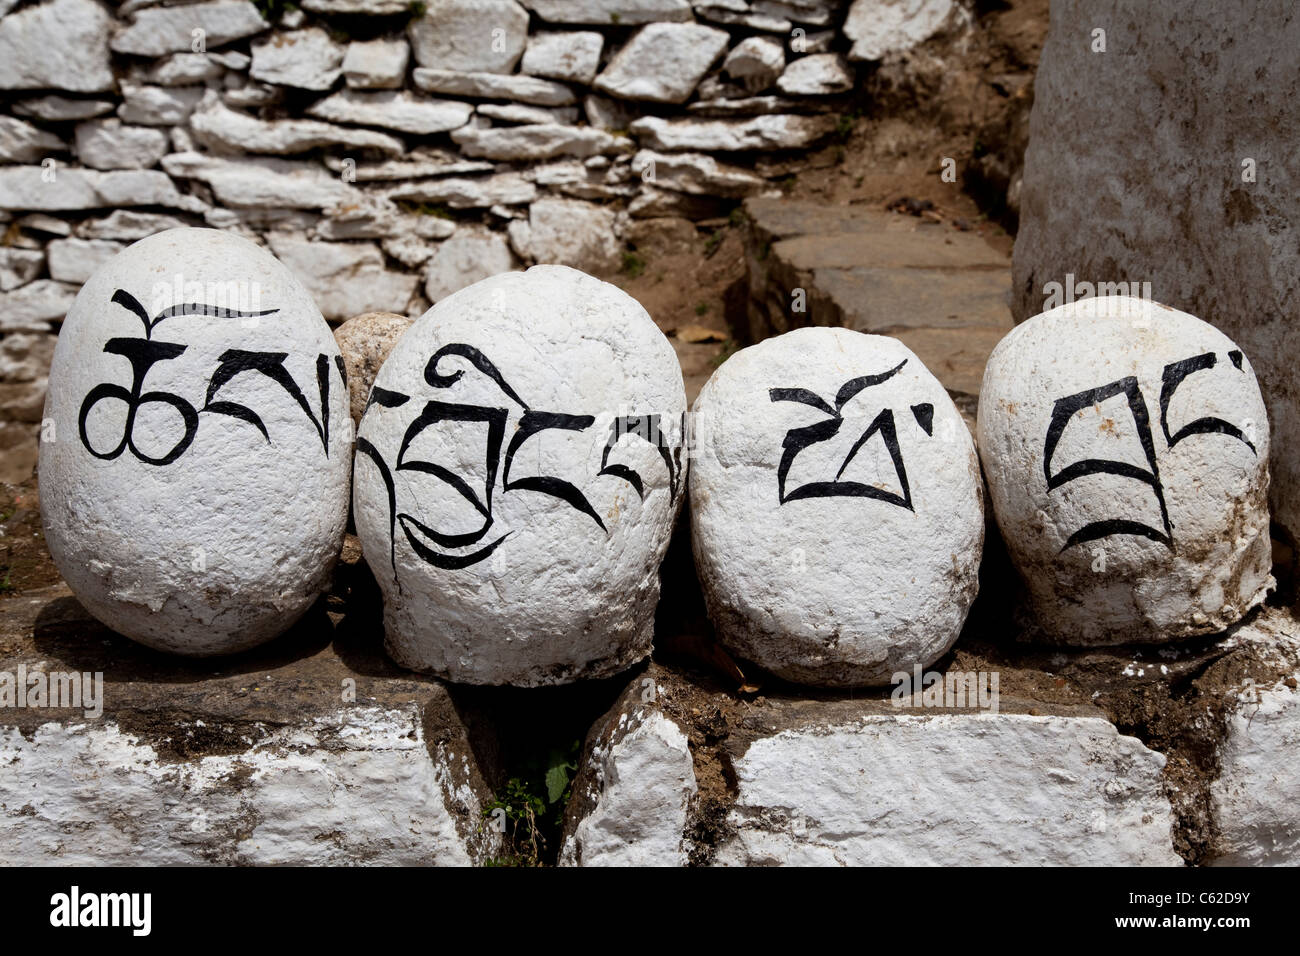 Bemalten Steinen mit dem Namen "Tango Goemba" (Pferdekopf) am Eingang des Klosters in Bhutan, Südost-Asien. Stockfoto